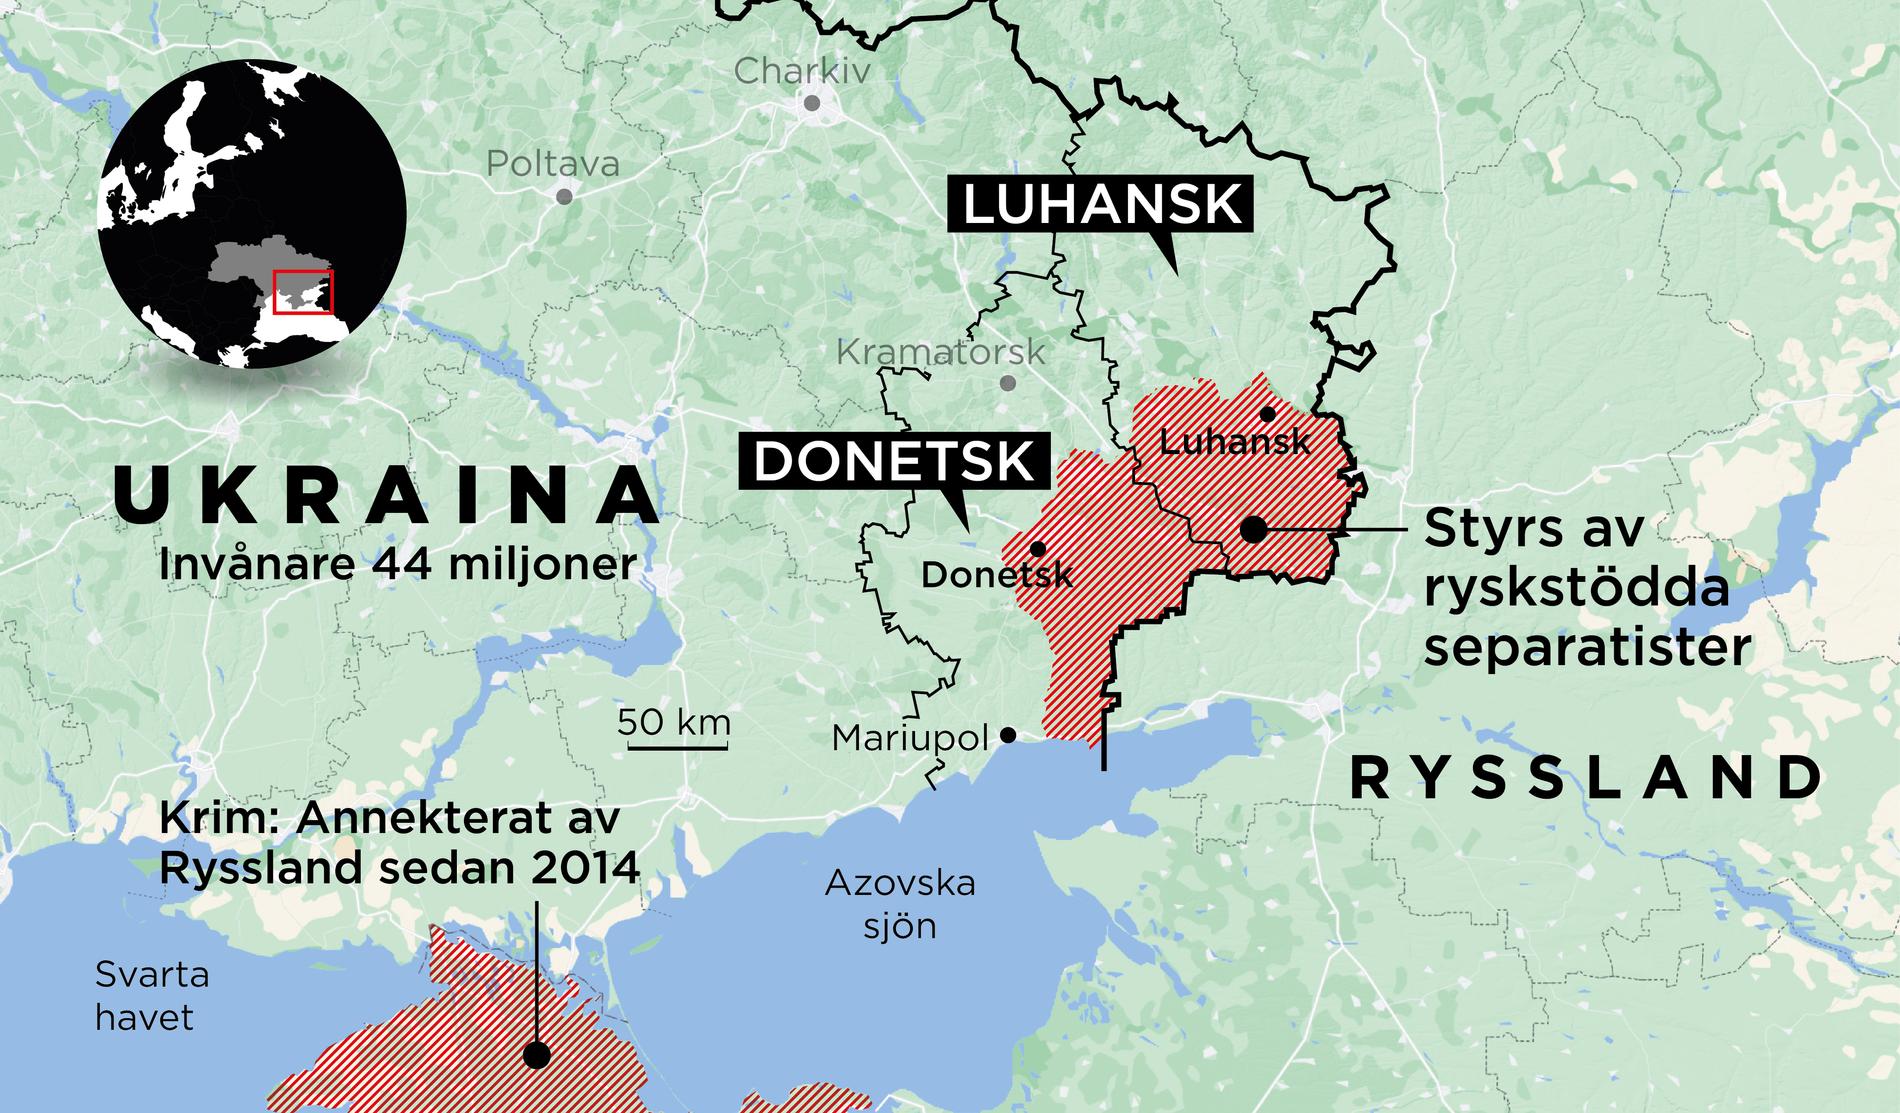 Donetsk och Luhansk styrs i dag av ryskstödda separatister med starka band till Moskva. De vill inte tillhöra Ukraina utan välkomnar stödet från Ryssland. 